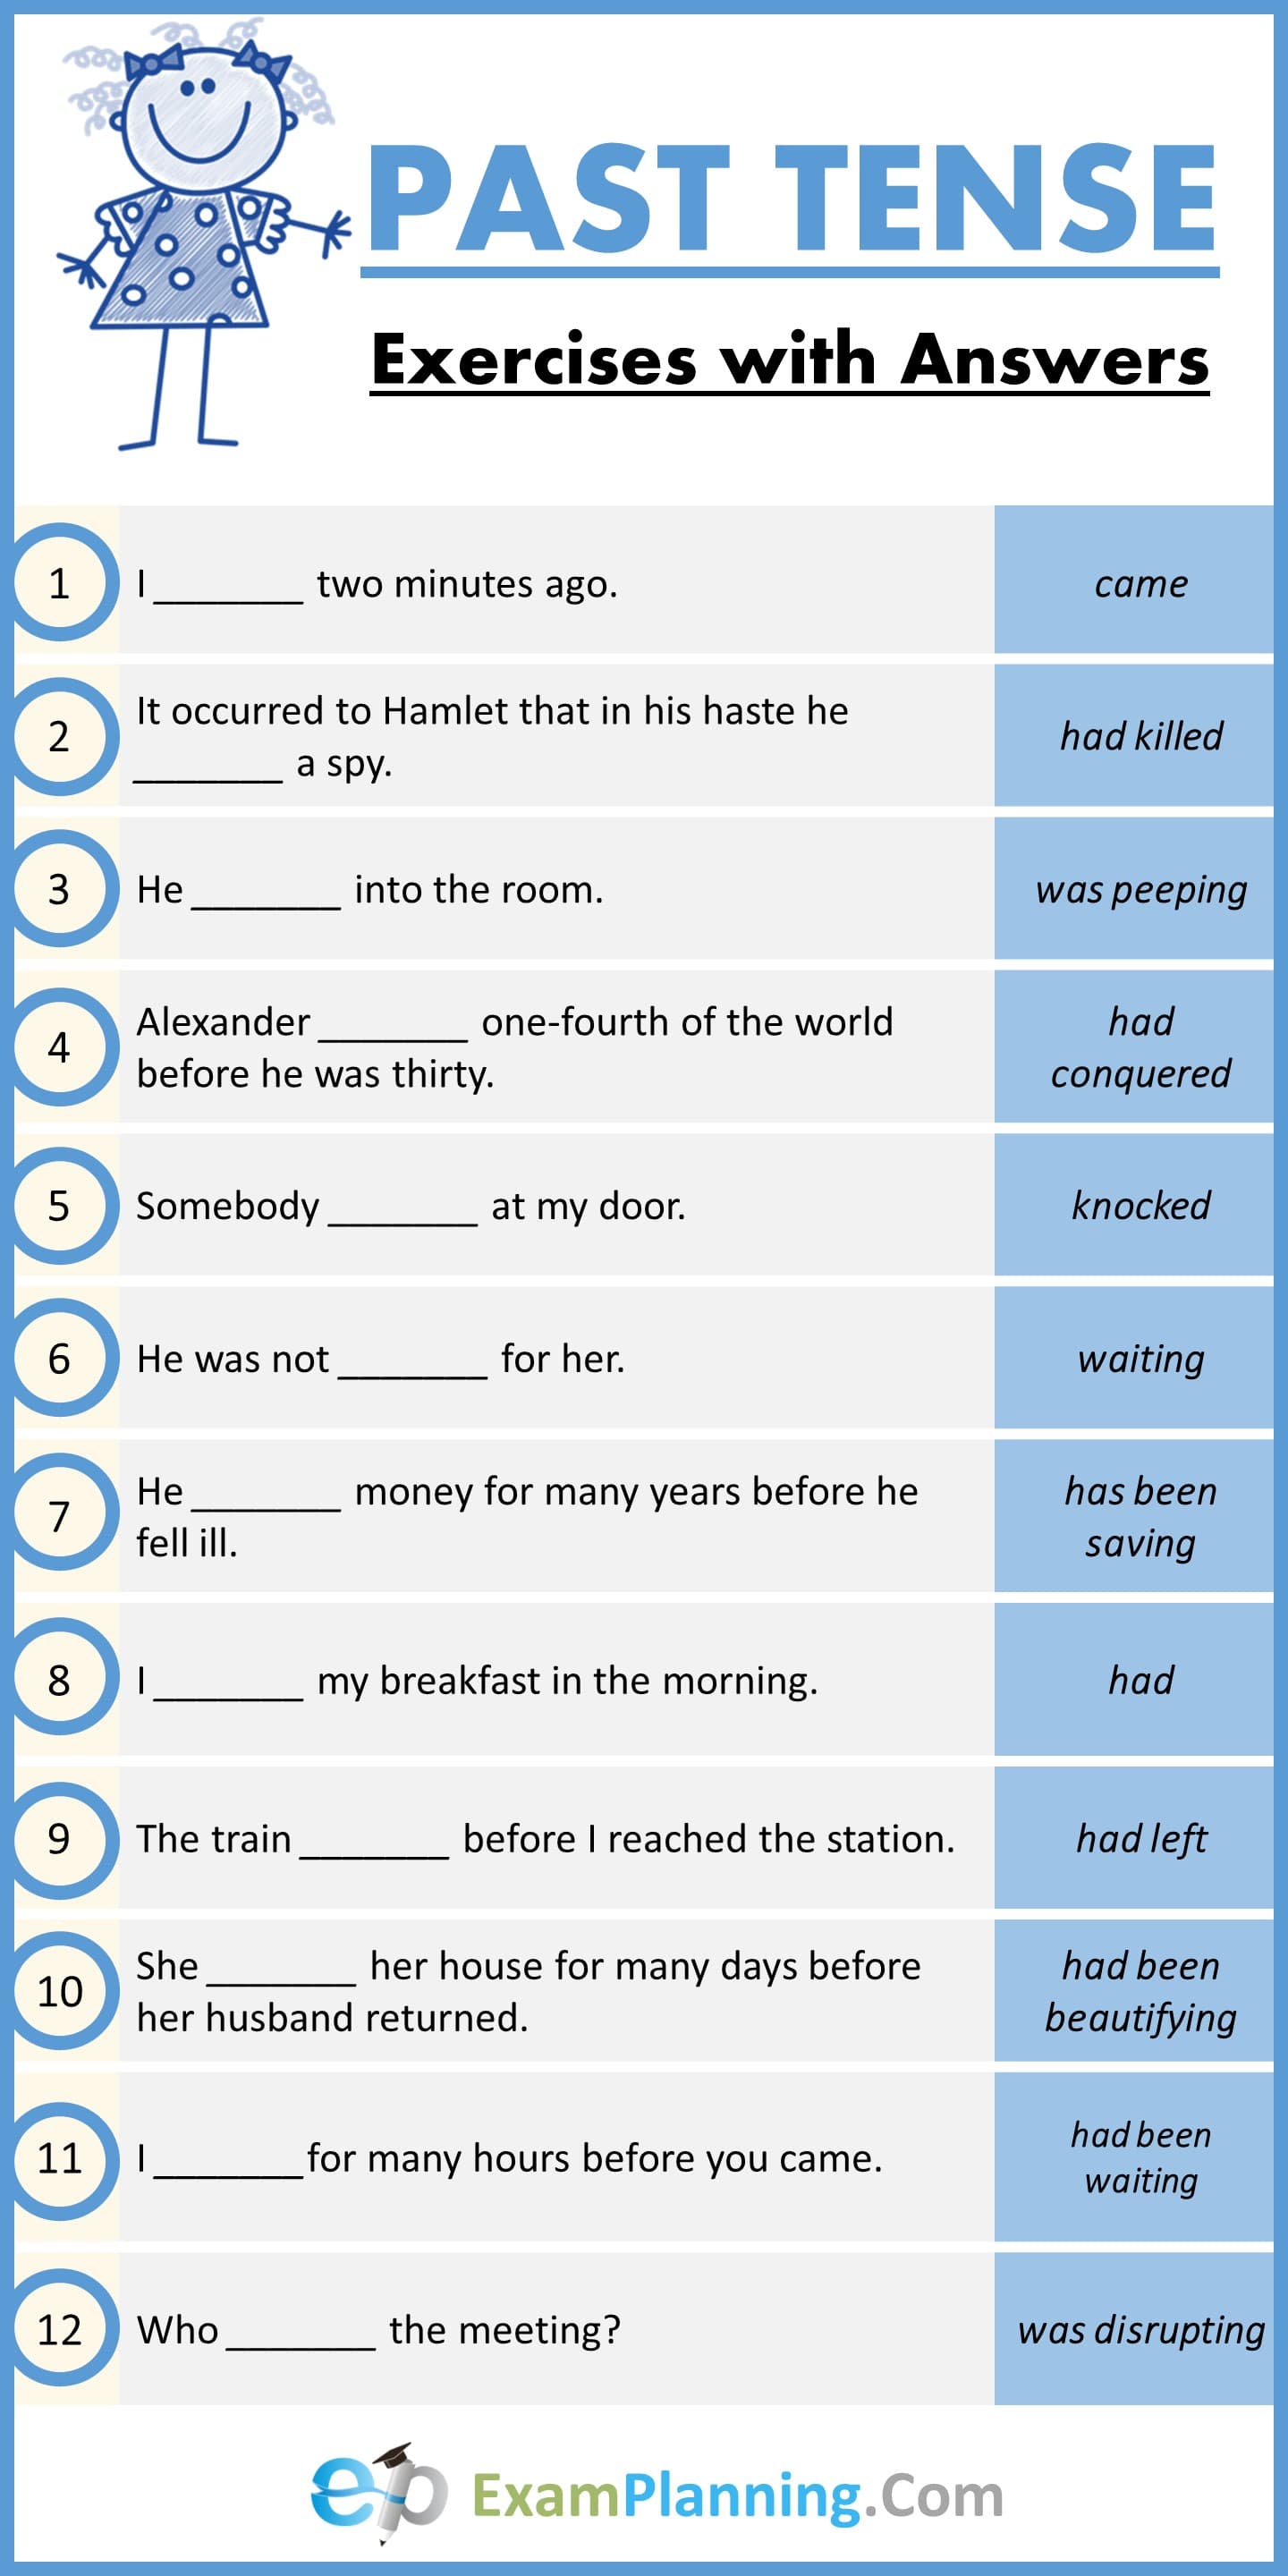 re-writing-verb-tenses-worksheet-verb-worksheets-language-worksheets-verb-tenses